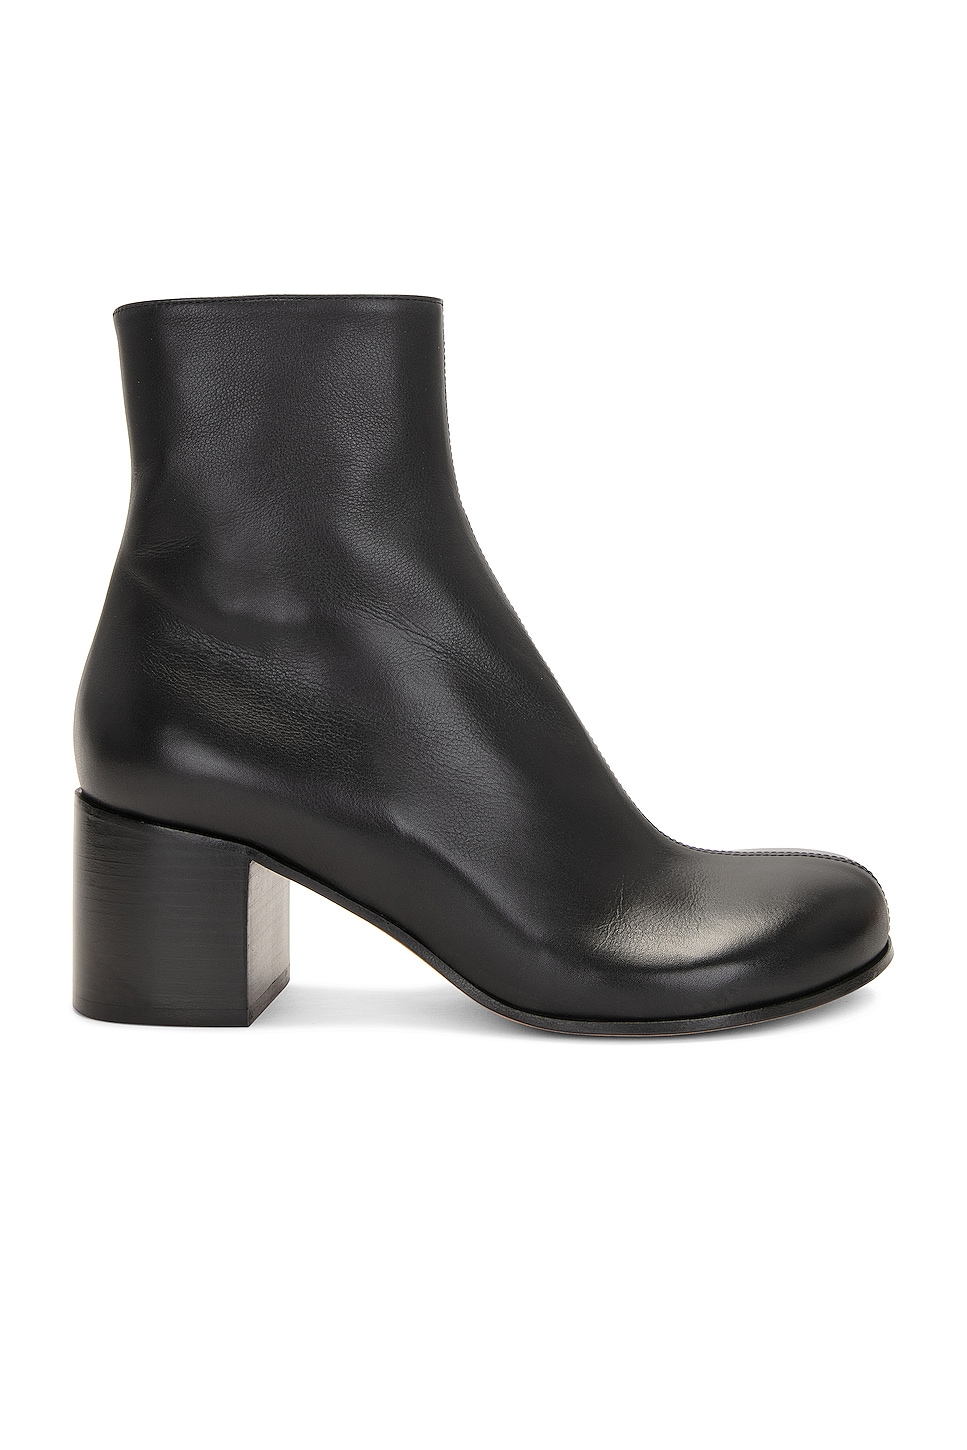 Image 1 of Loewe Terra Ankle Boot in Black